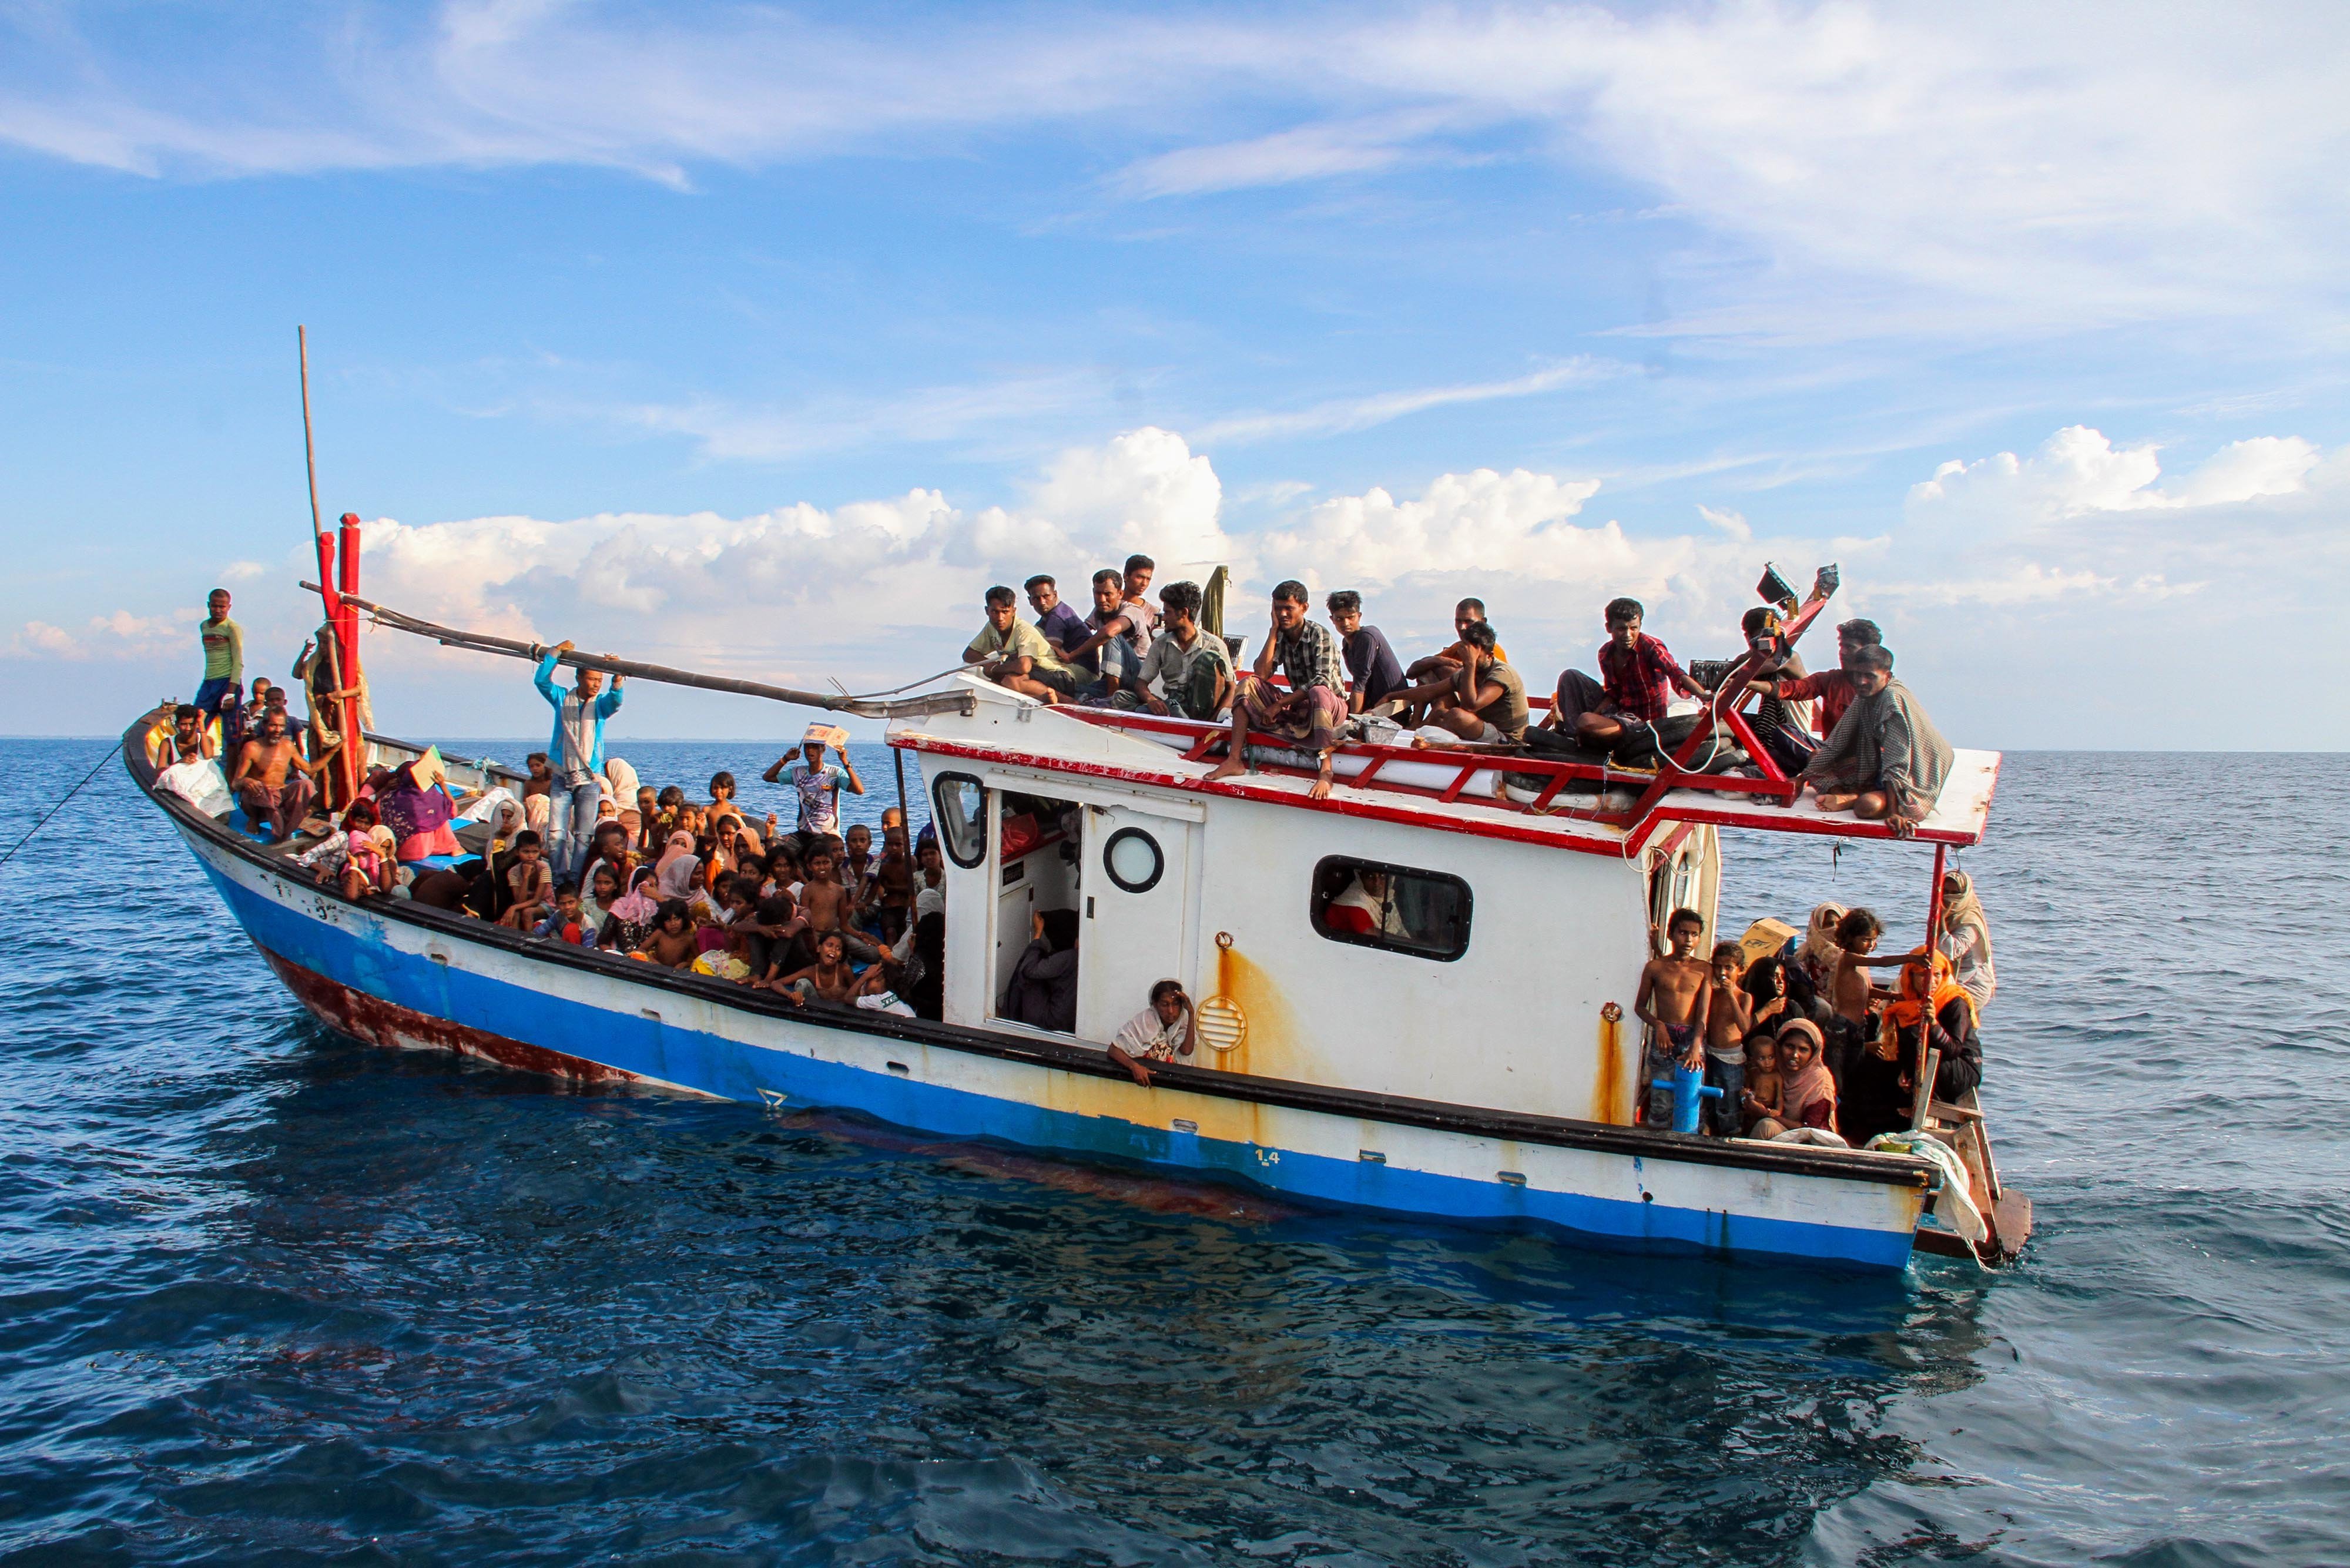 Puluhan warga etnis Rohingya berada di dalam kapal saat terdampar di tengah laut di perairan Aceh. \r\n